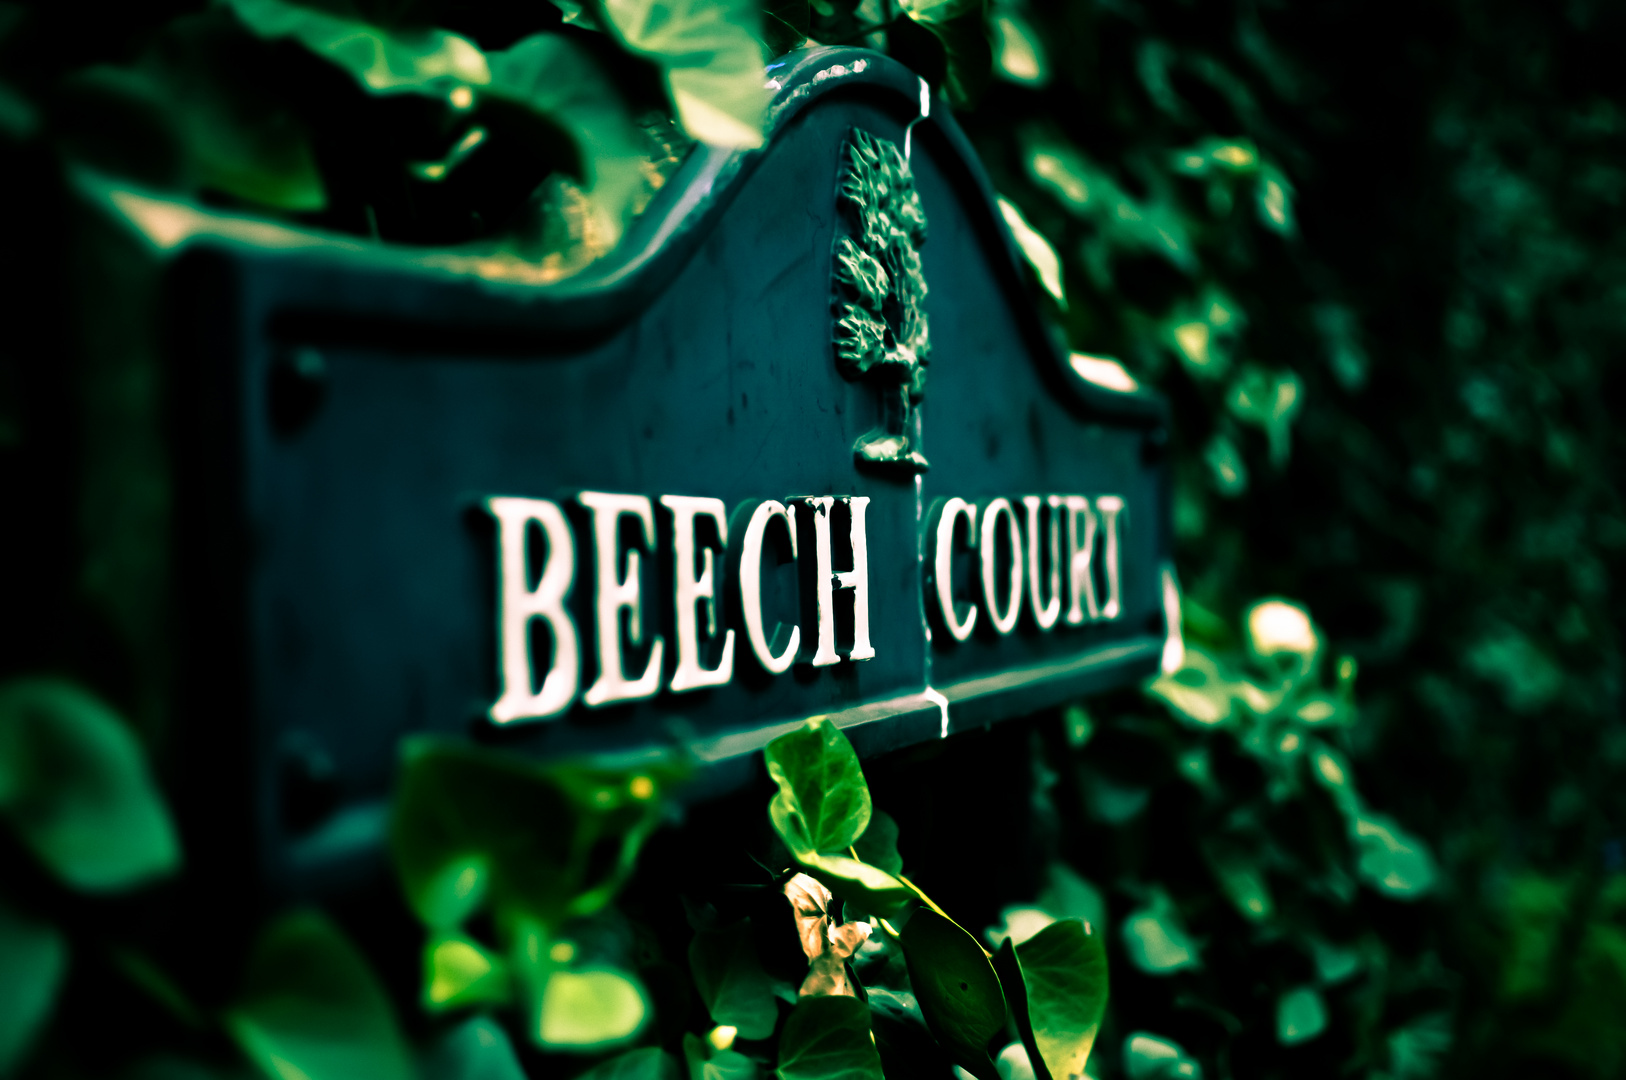 Beech court